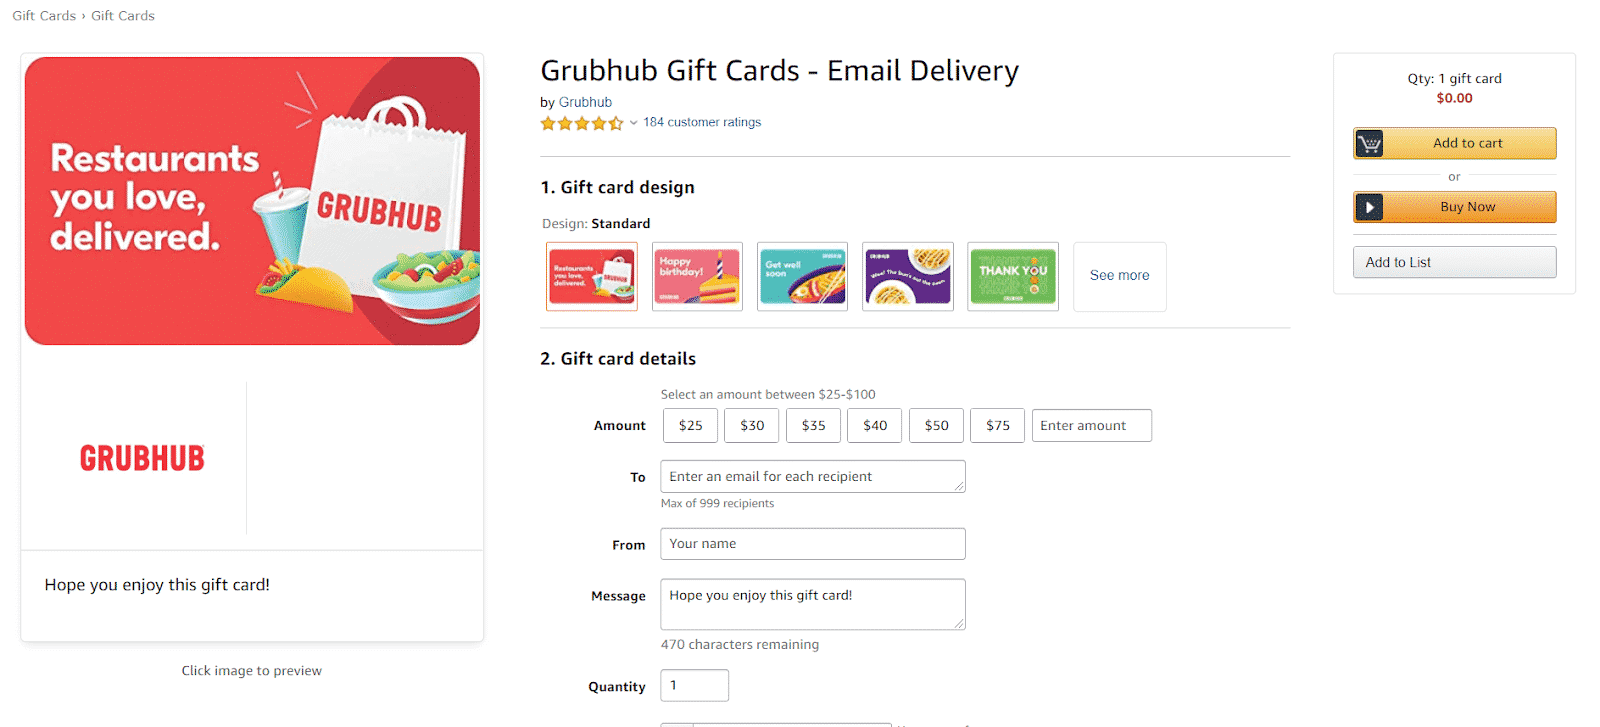 Grubhub gift card on Amazon